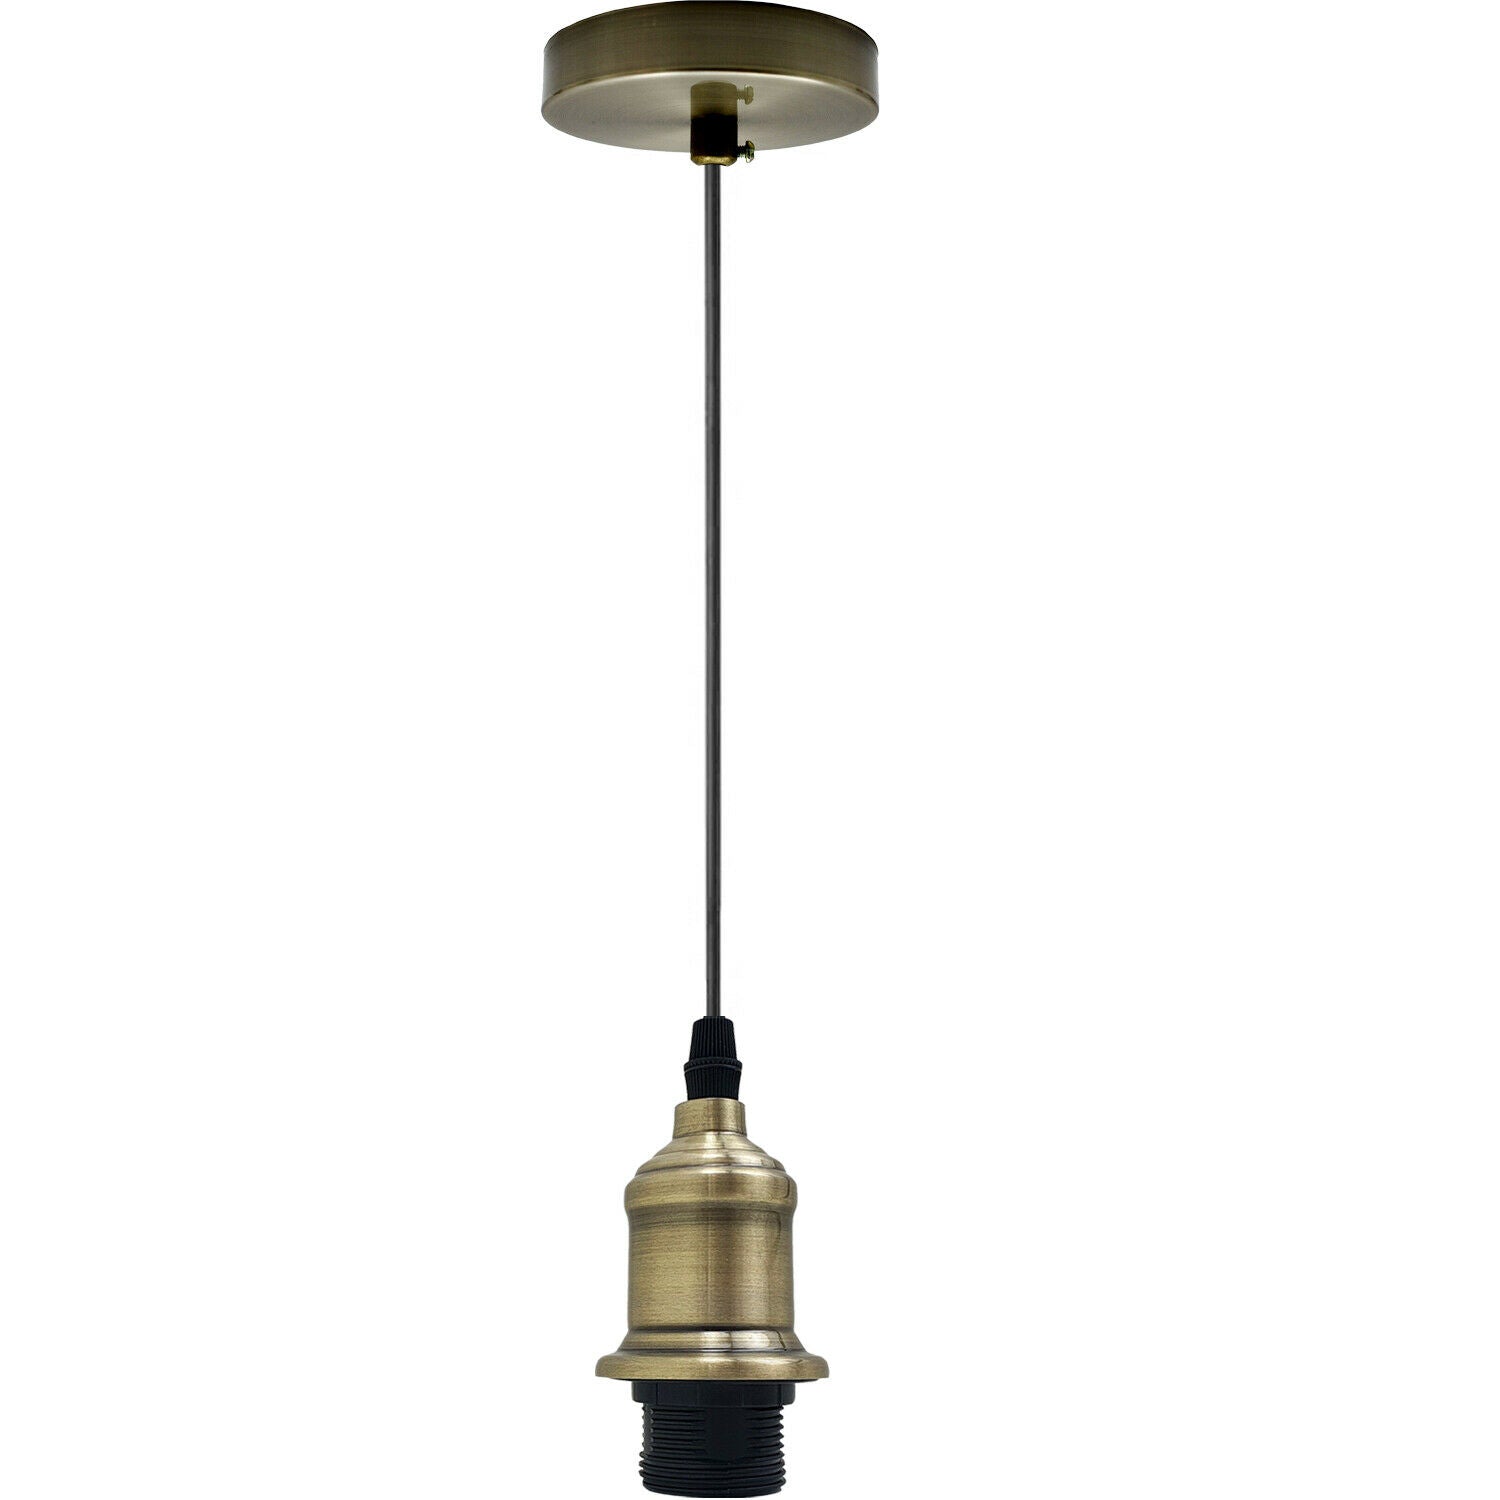 New E27 Ceiling Rose Light Fitting Vintage Industrial Pendant Lamp Bulb Holder~2074 - LEDSone UK Ltd